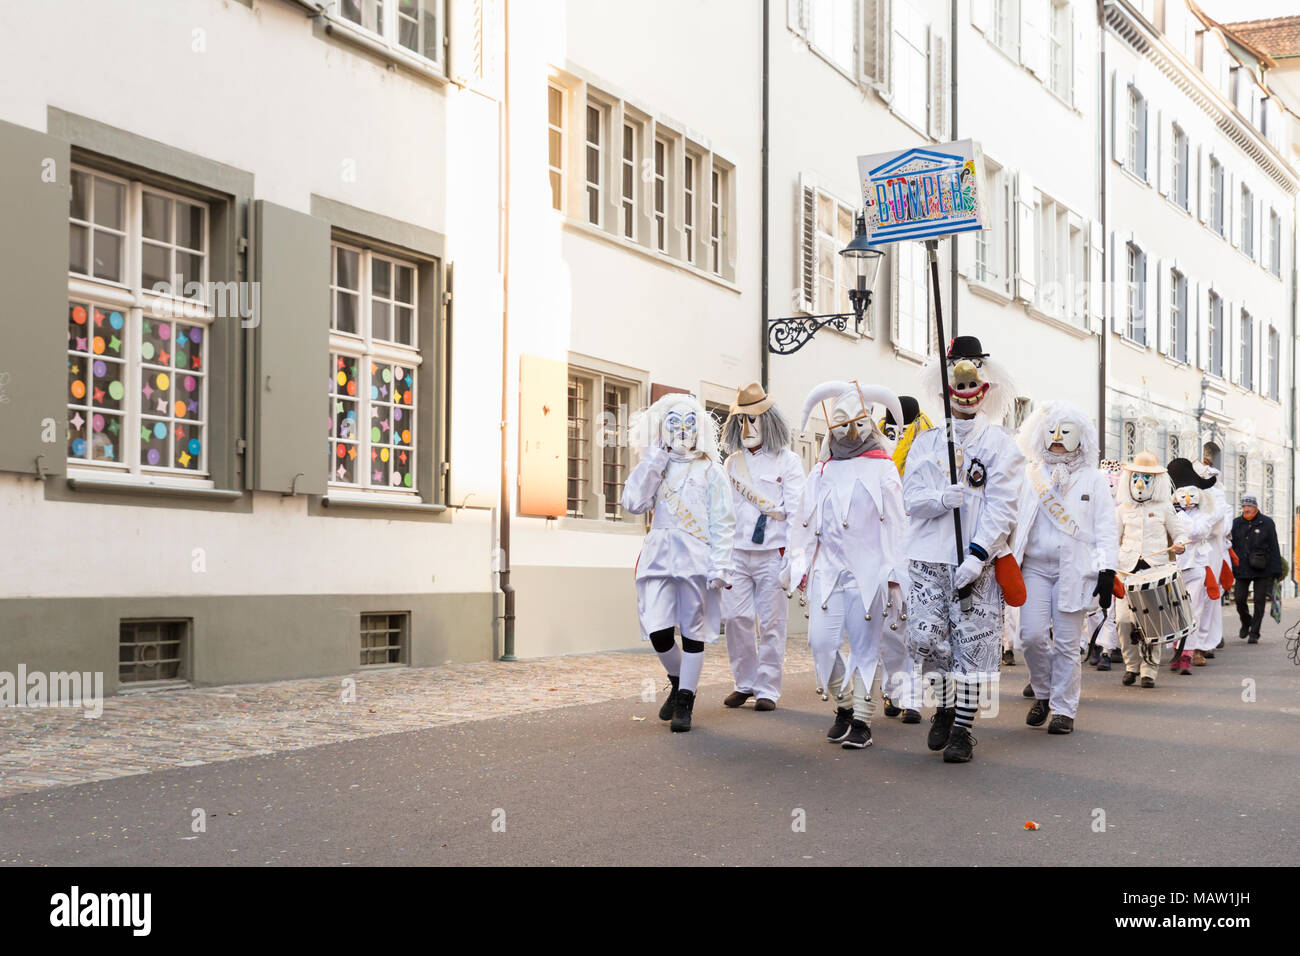 Carnaval de Bâle. Augustinergasse, Bâle, Suisse - 21 février 2018. Groupe Carnival en costumes blancs dans la vieille ville Banque D'Images